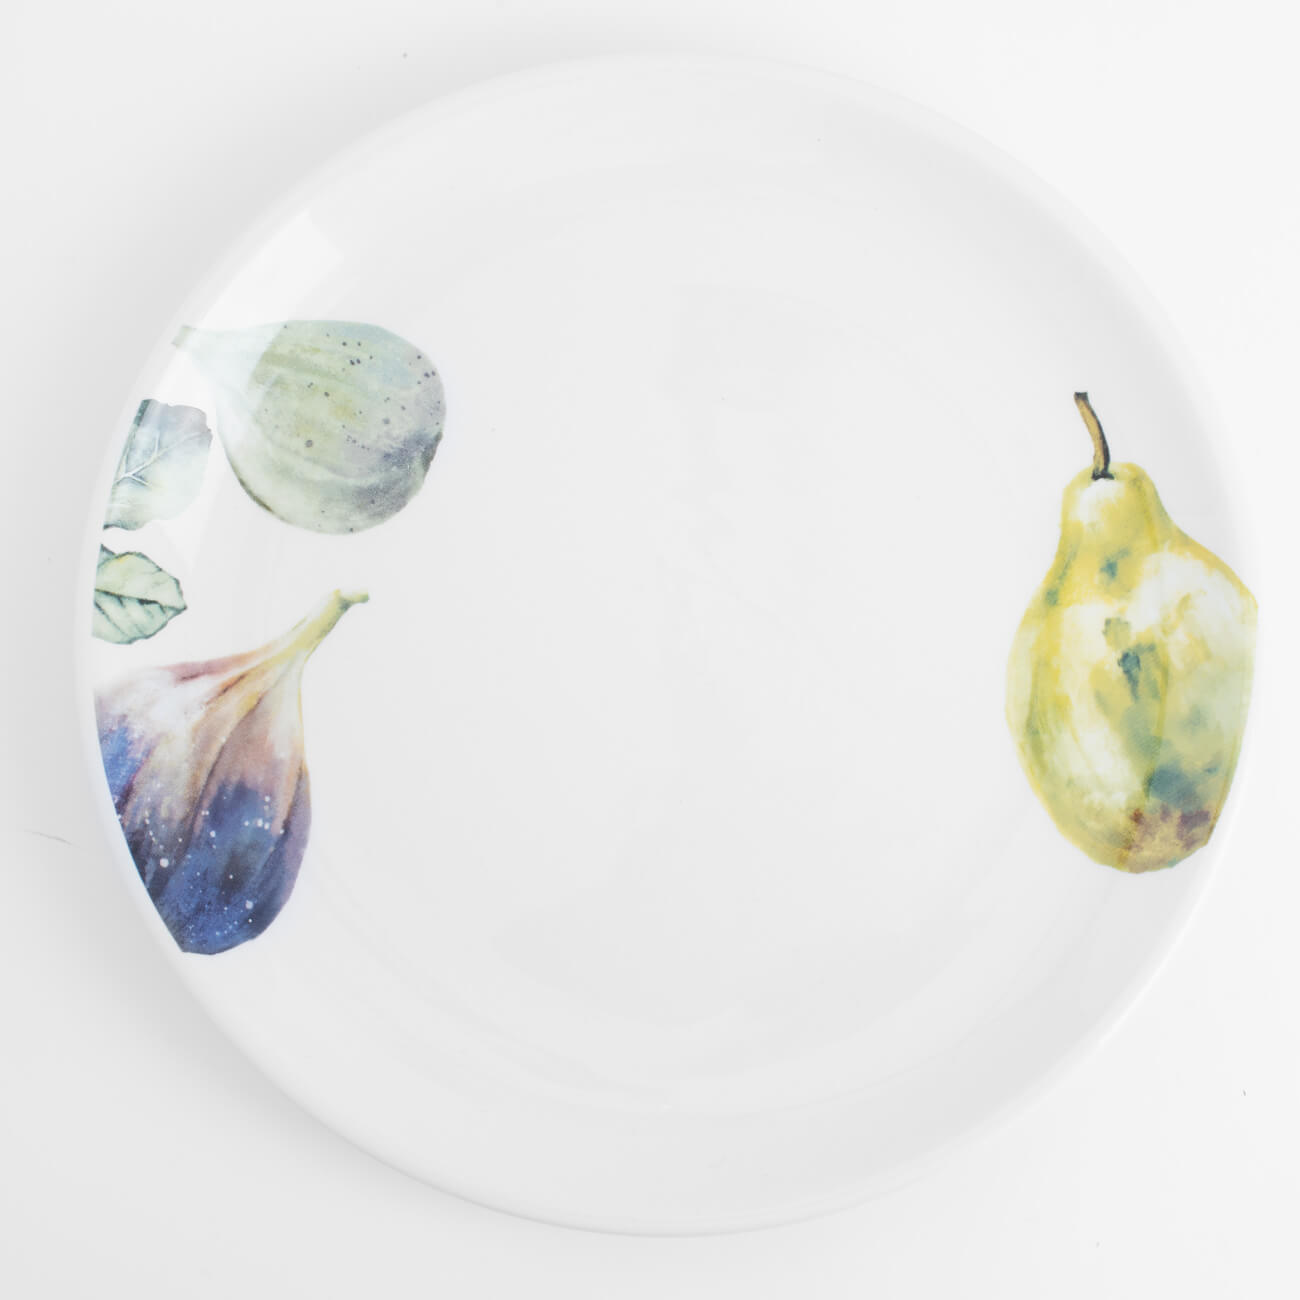 Тарелка закусочная, 21 см, керамика, белая, Инжир и груша, Fruit garden тарелка roy kirkham palace garden 27 см